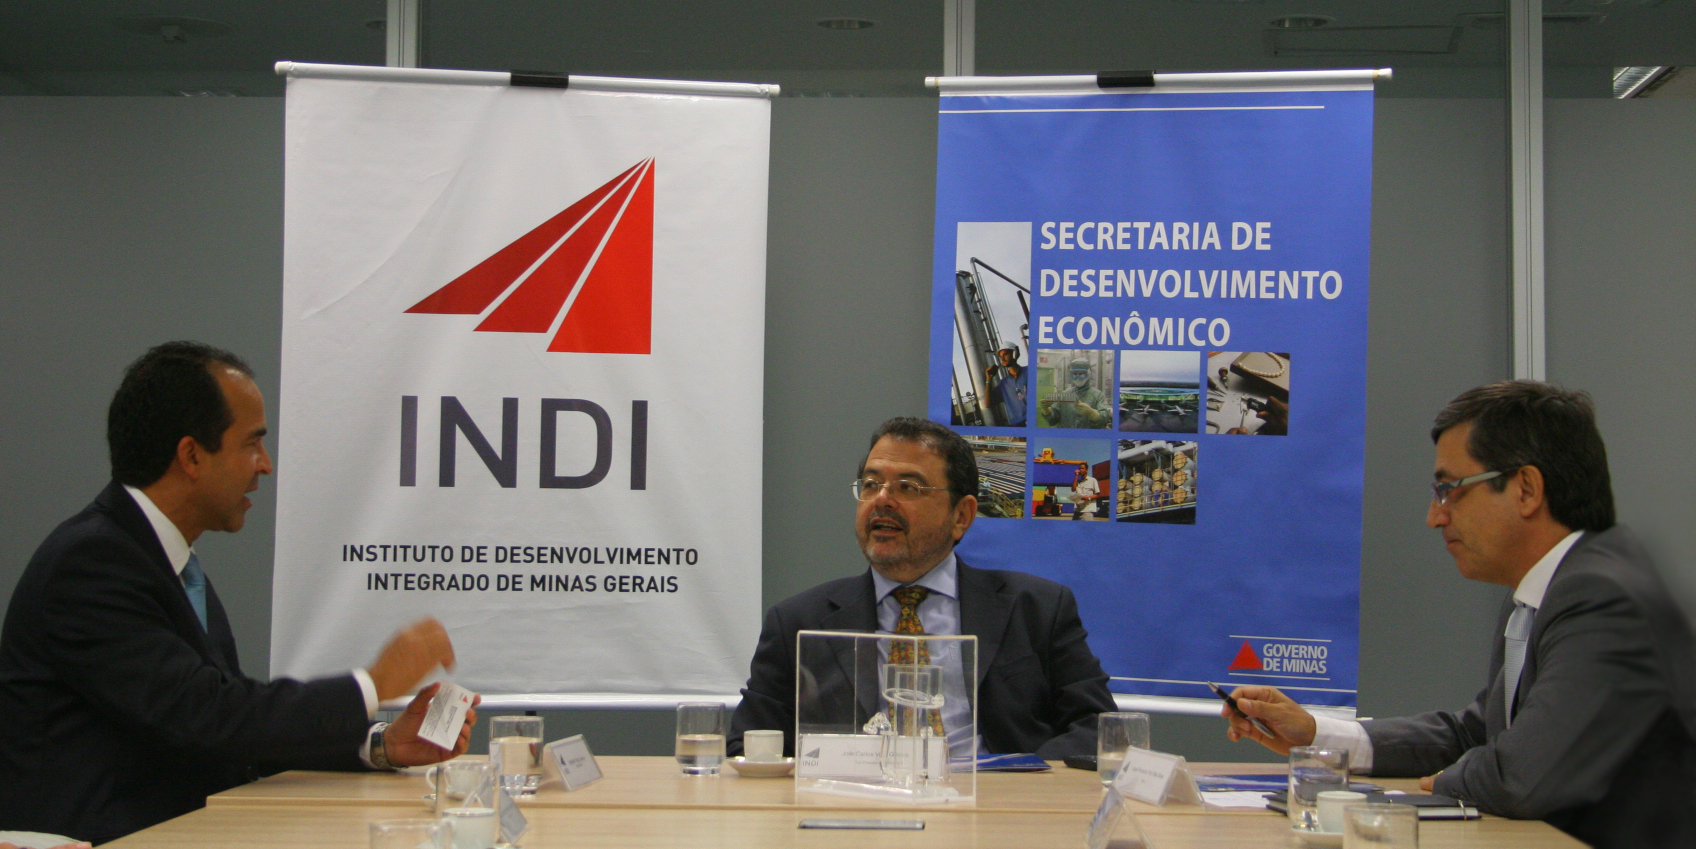 Empresas de tecnologia, logística e radiodifusão   anunciam novos investimentos em Minas